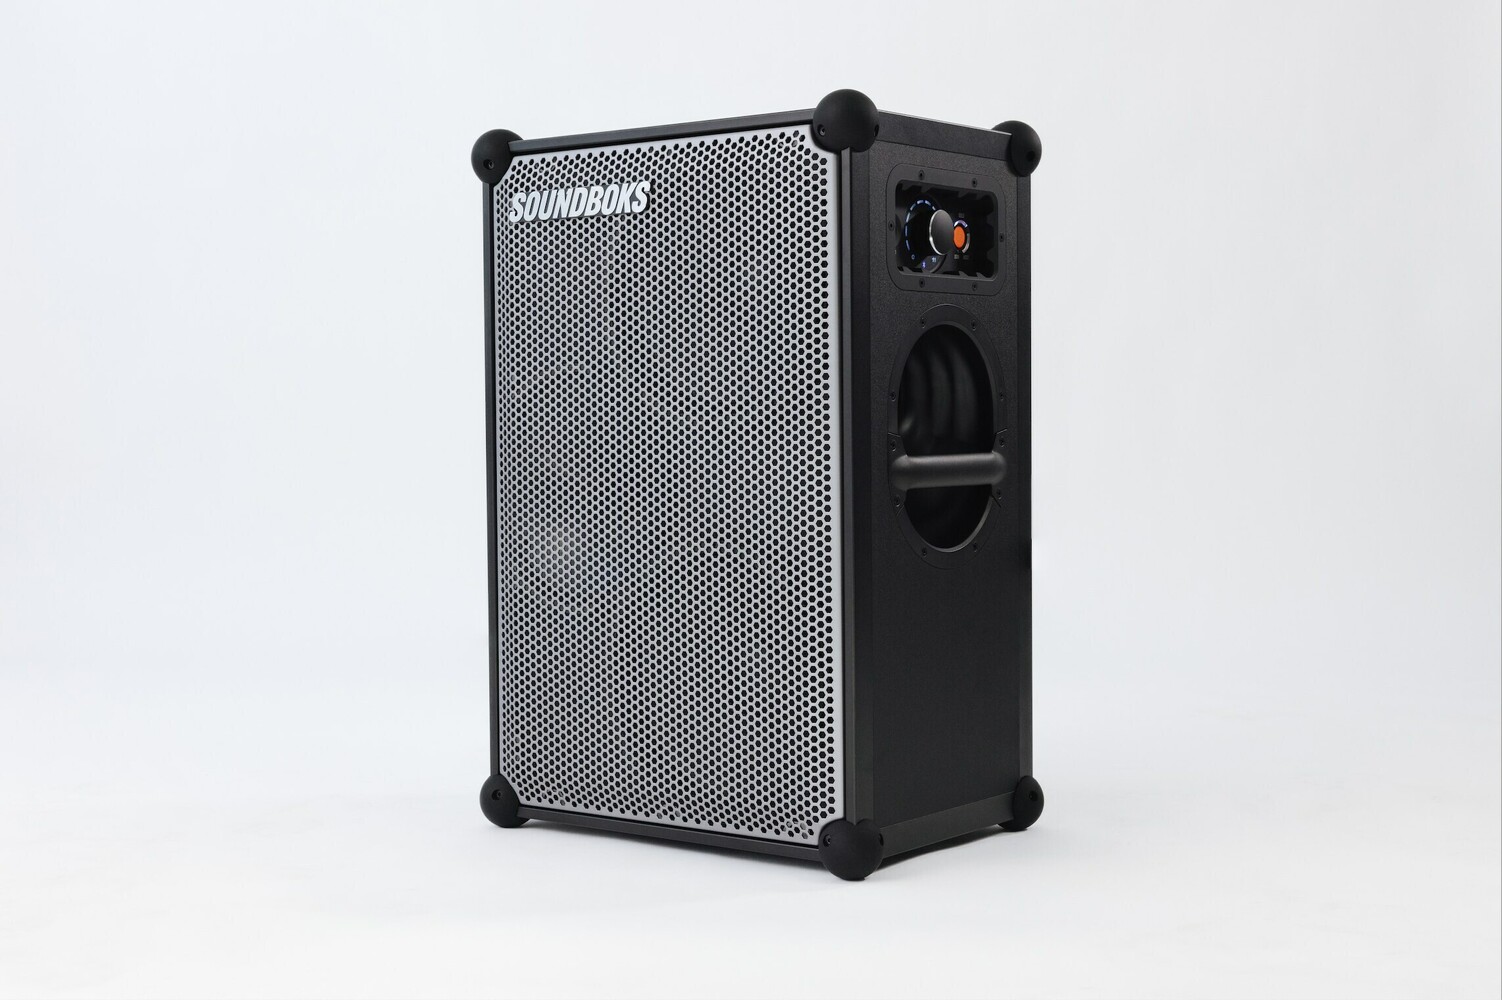 SOUNDBOKS introduces SOUNDBOKS 4: A Bluetooth Speaker Delivering Concert-worthy Sound and Power